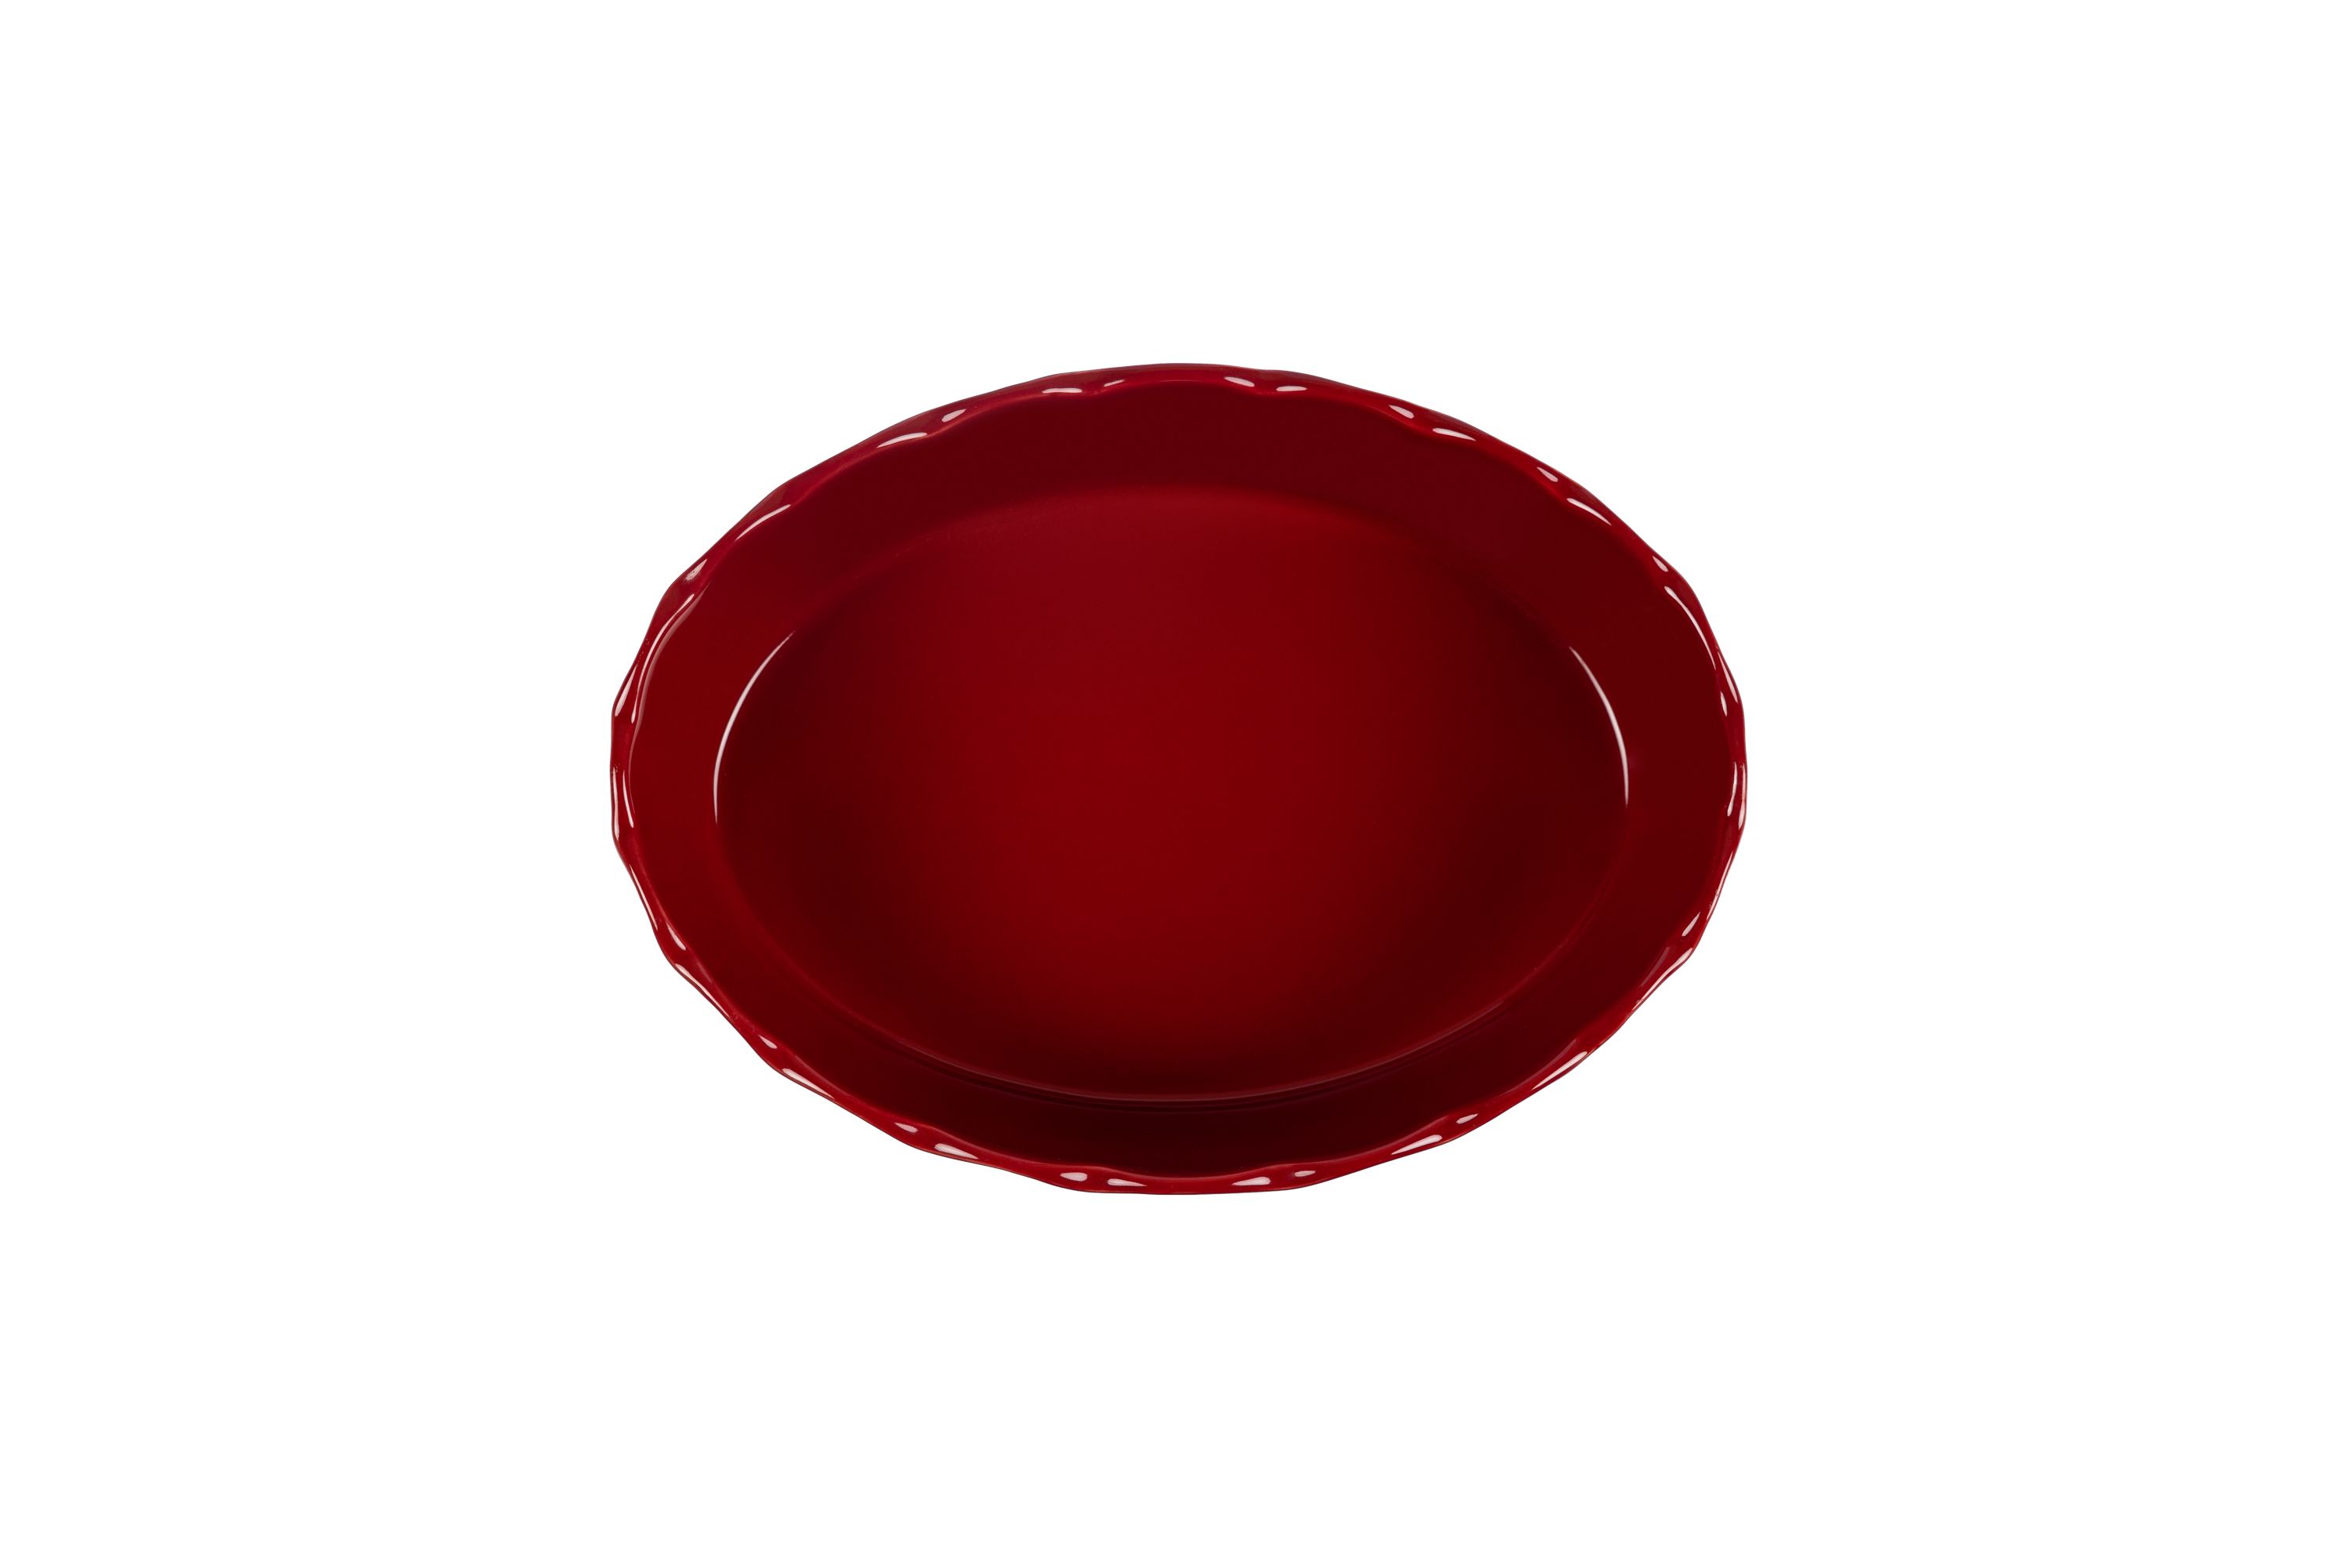 Blick von oben auf die rote, ovale Stoneware-Ofenform